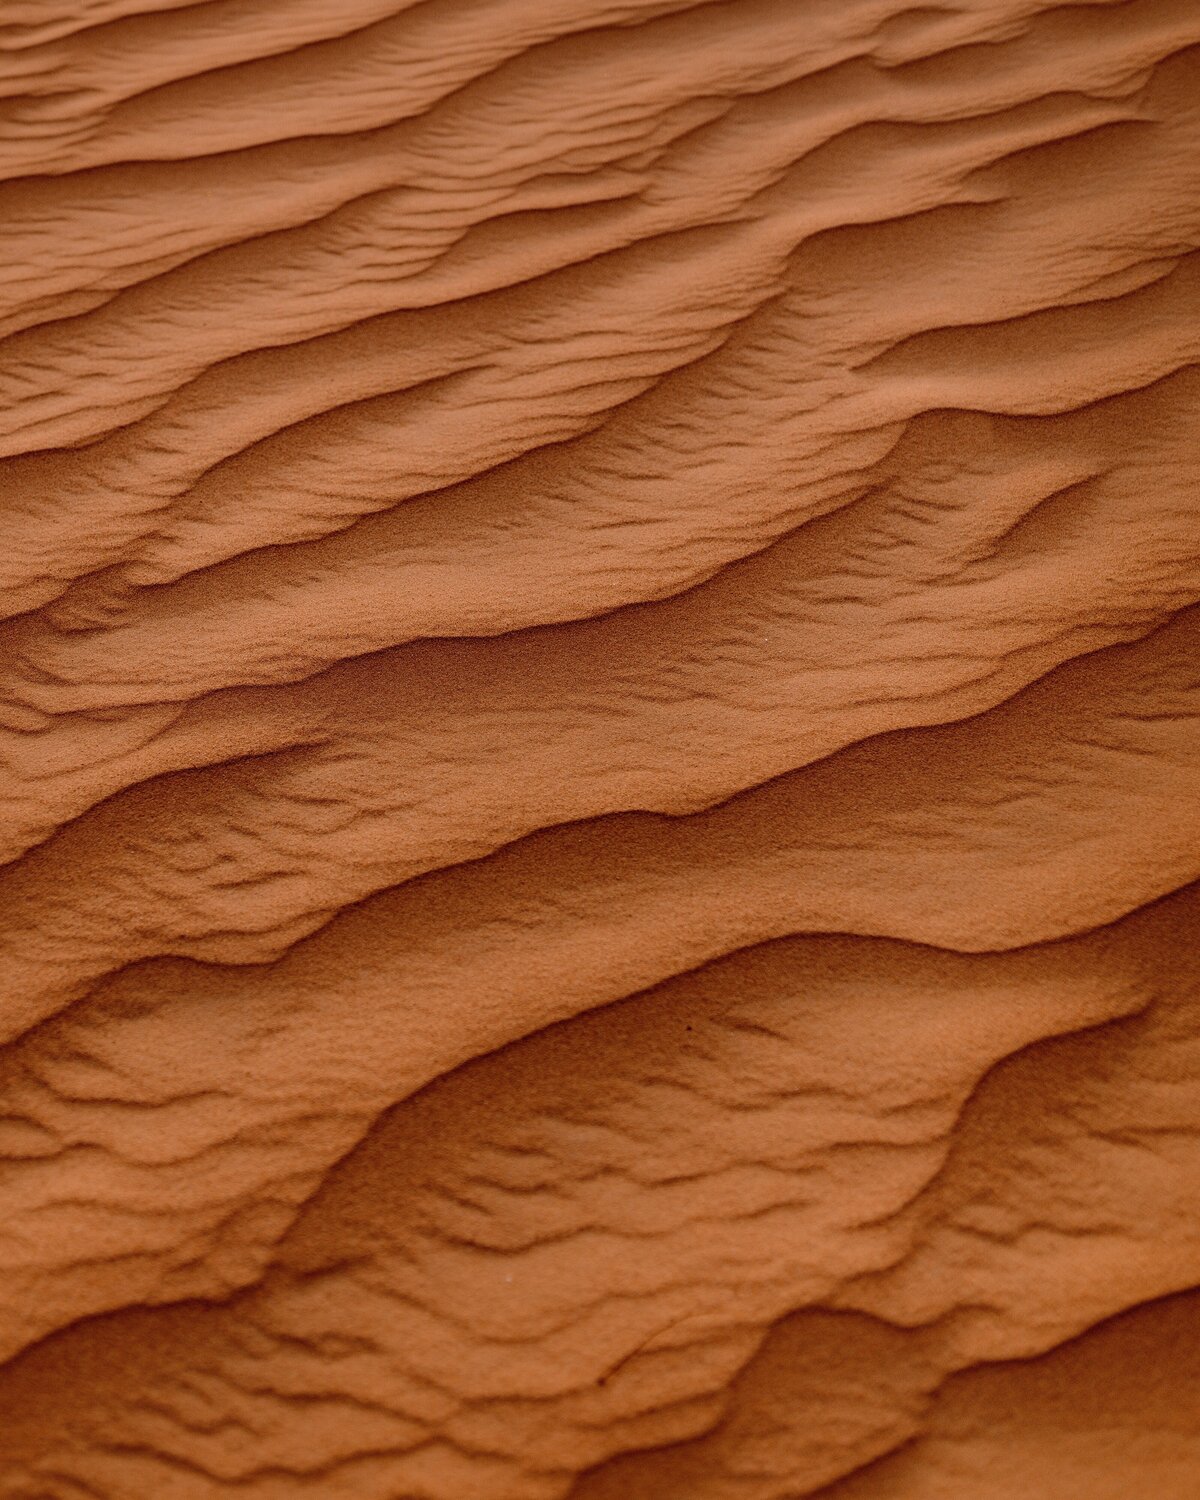 Textured clay orange background